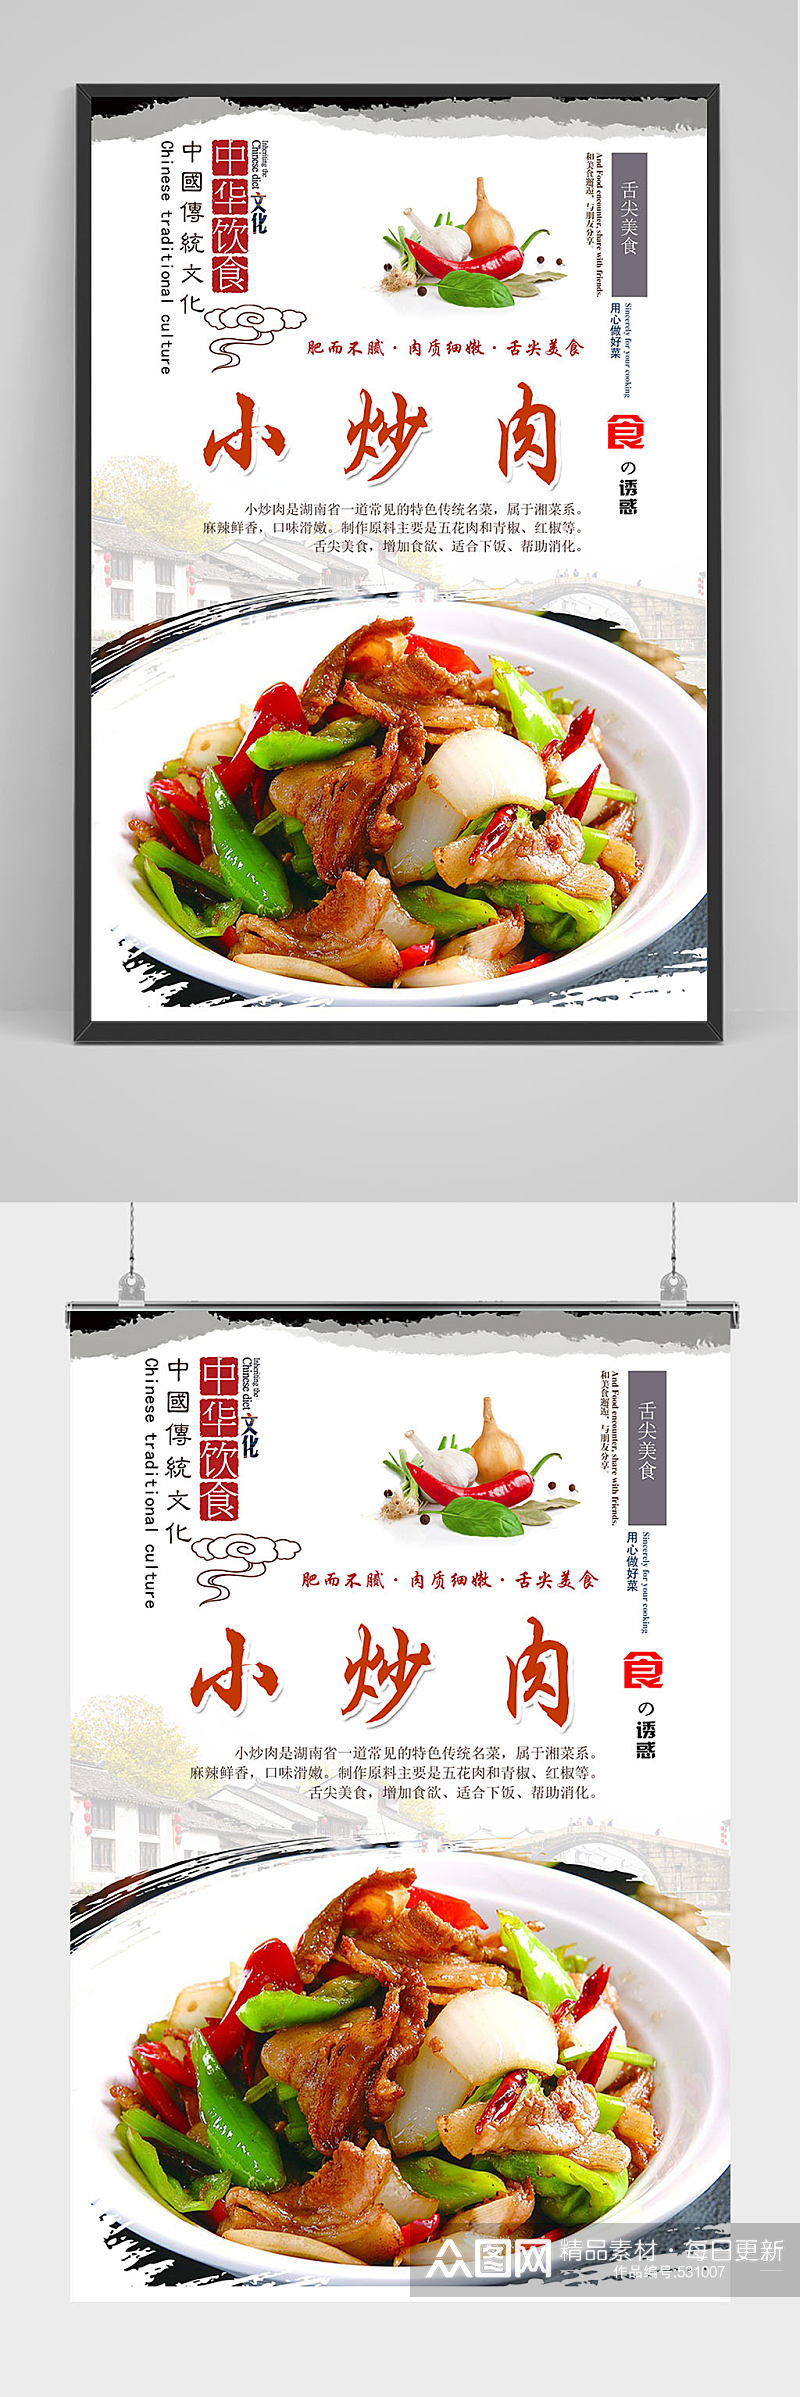 中华餐饮农家小炒肉海报设计素材